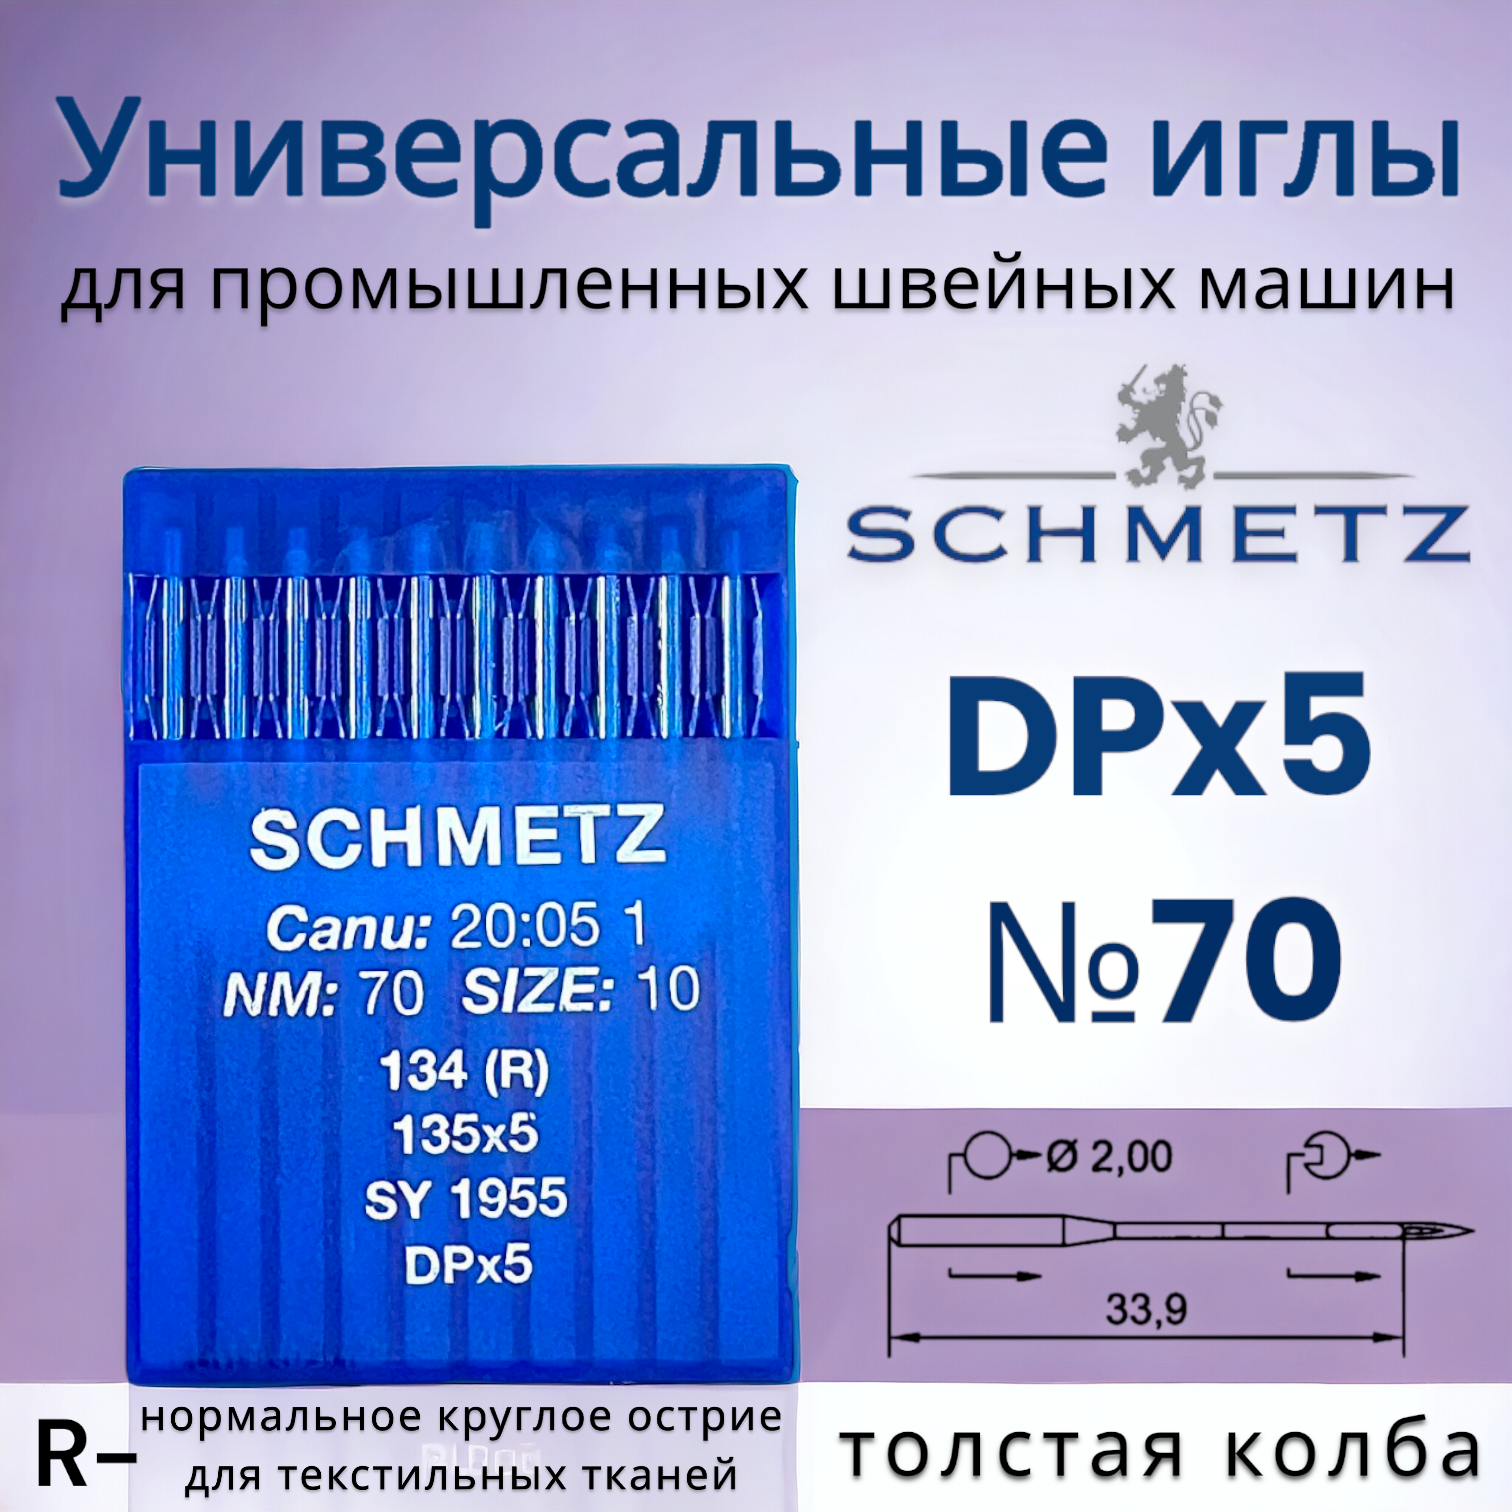 Иглы Schmetz/ для промышленных швейных машин DPx5 (134) R №70/ толстая колба